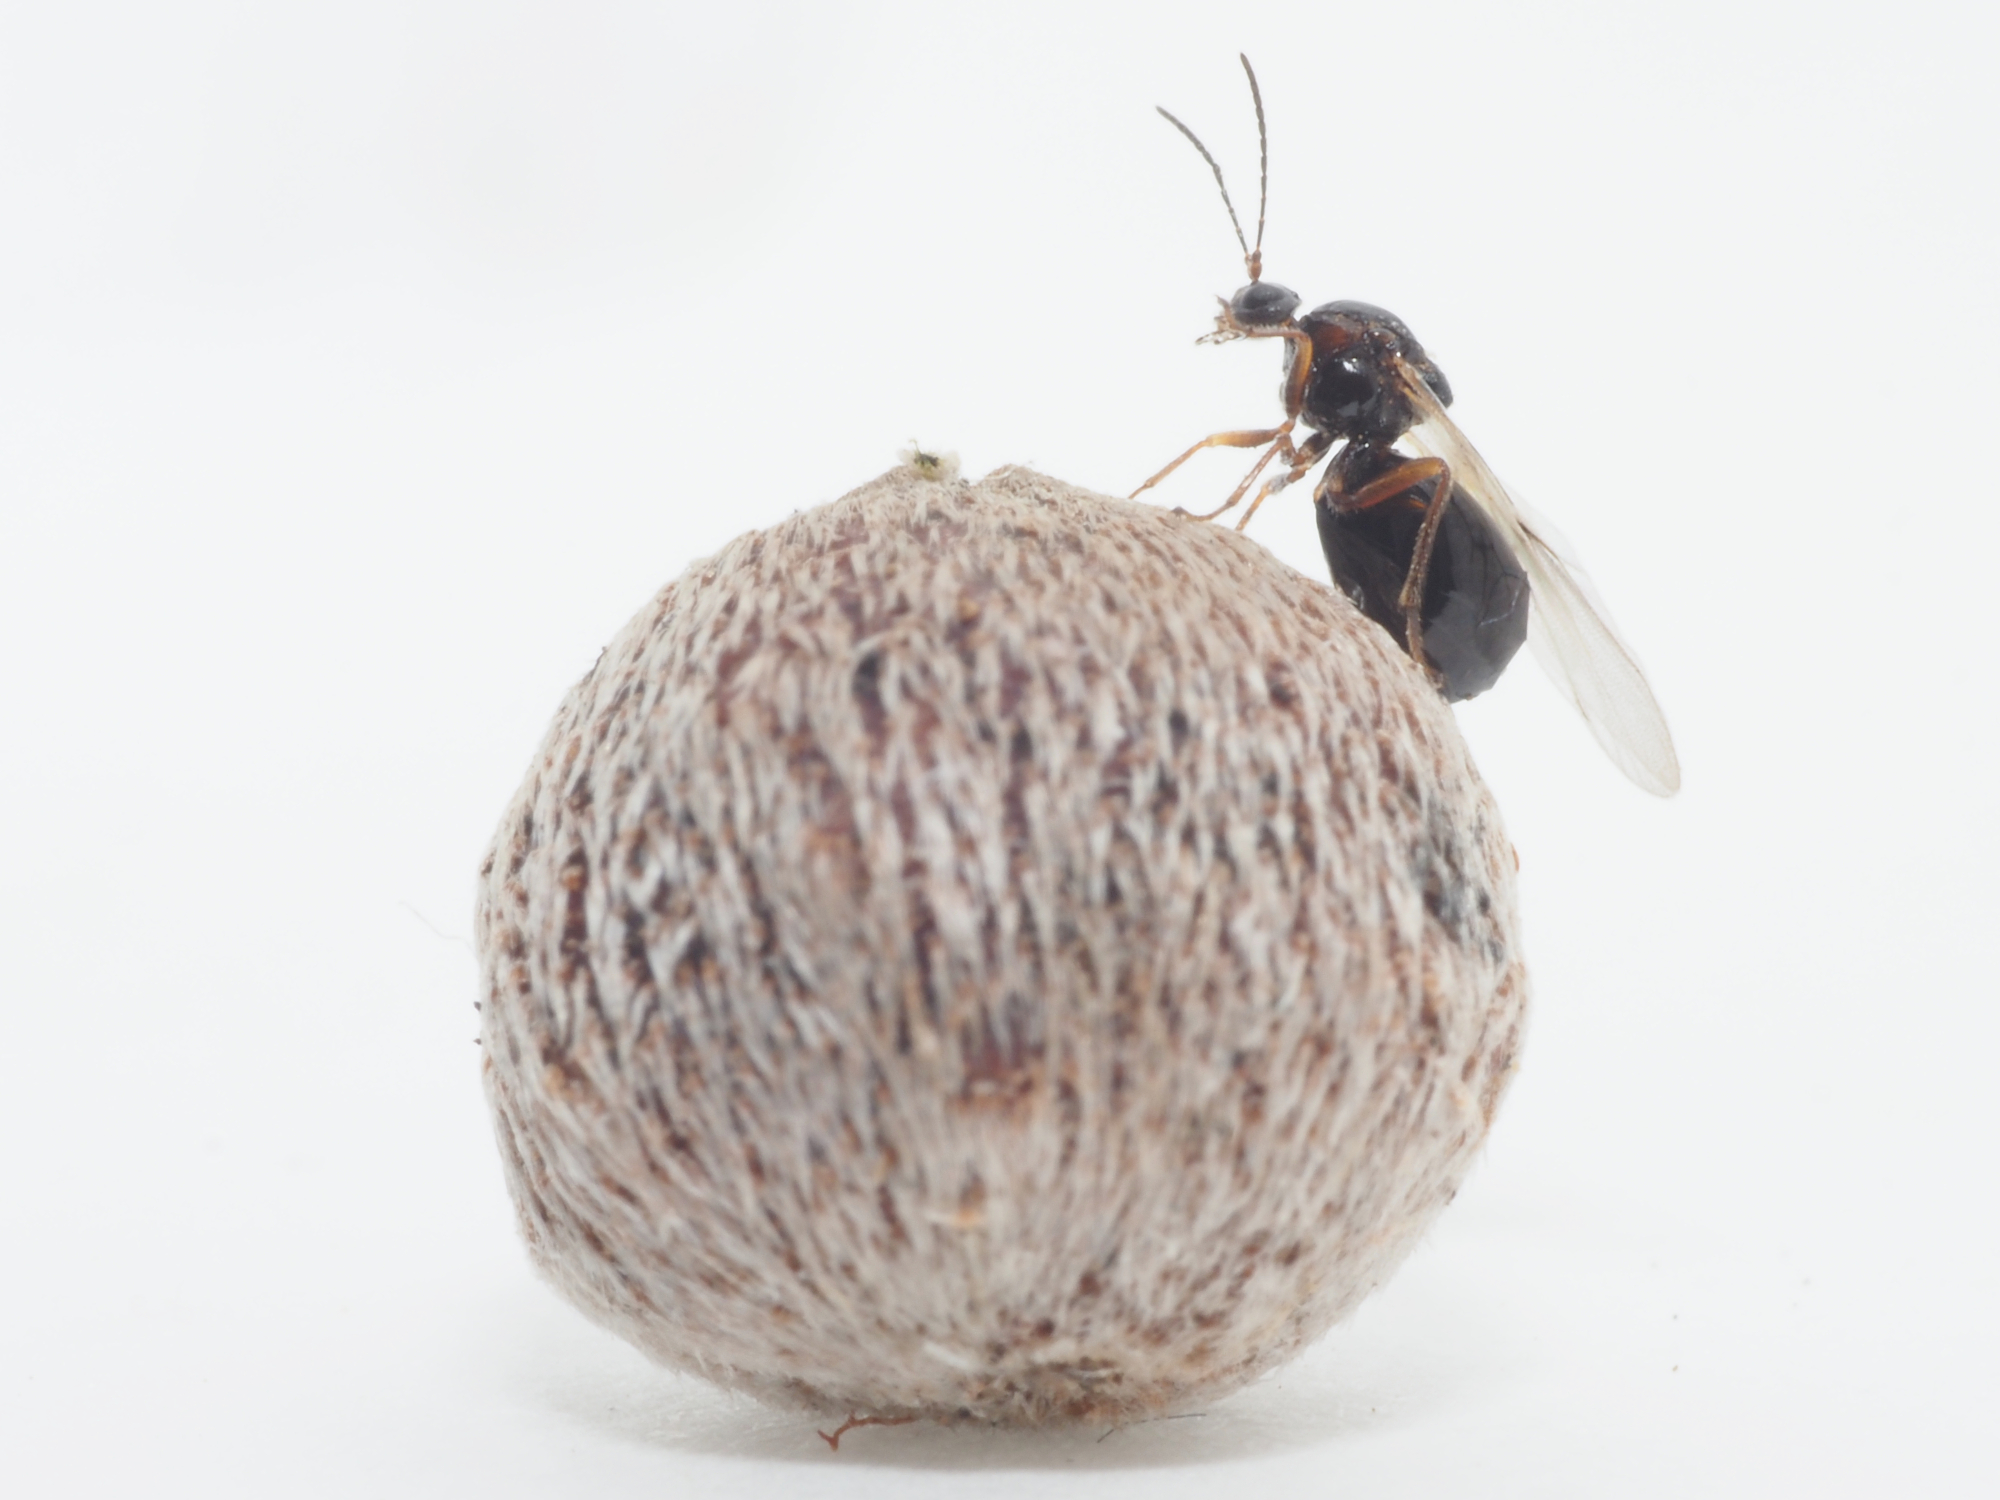 国立科学博物館 1種のハチが９回新種記載されていた 体長3mmのハチがもつ特殊な生態がもたらした混乱に終止符 文化庁のプレスリリース